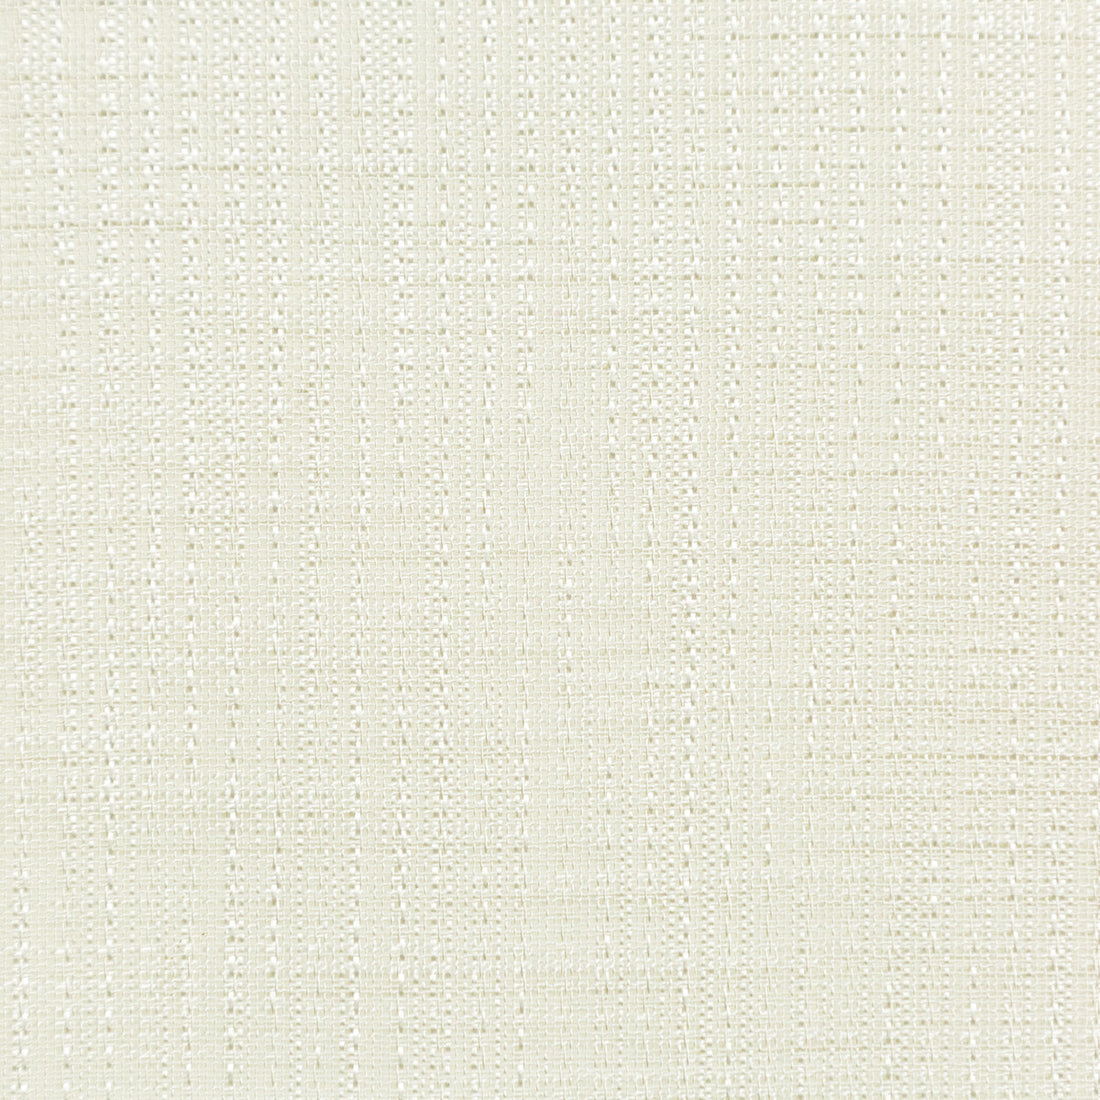 Kravet Basics fabric in 4760-1 color - pattern 4760.1.0 - by Kravet Basics